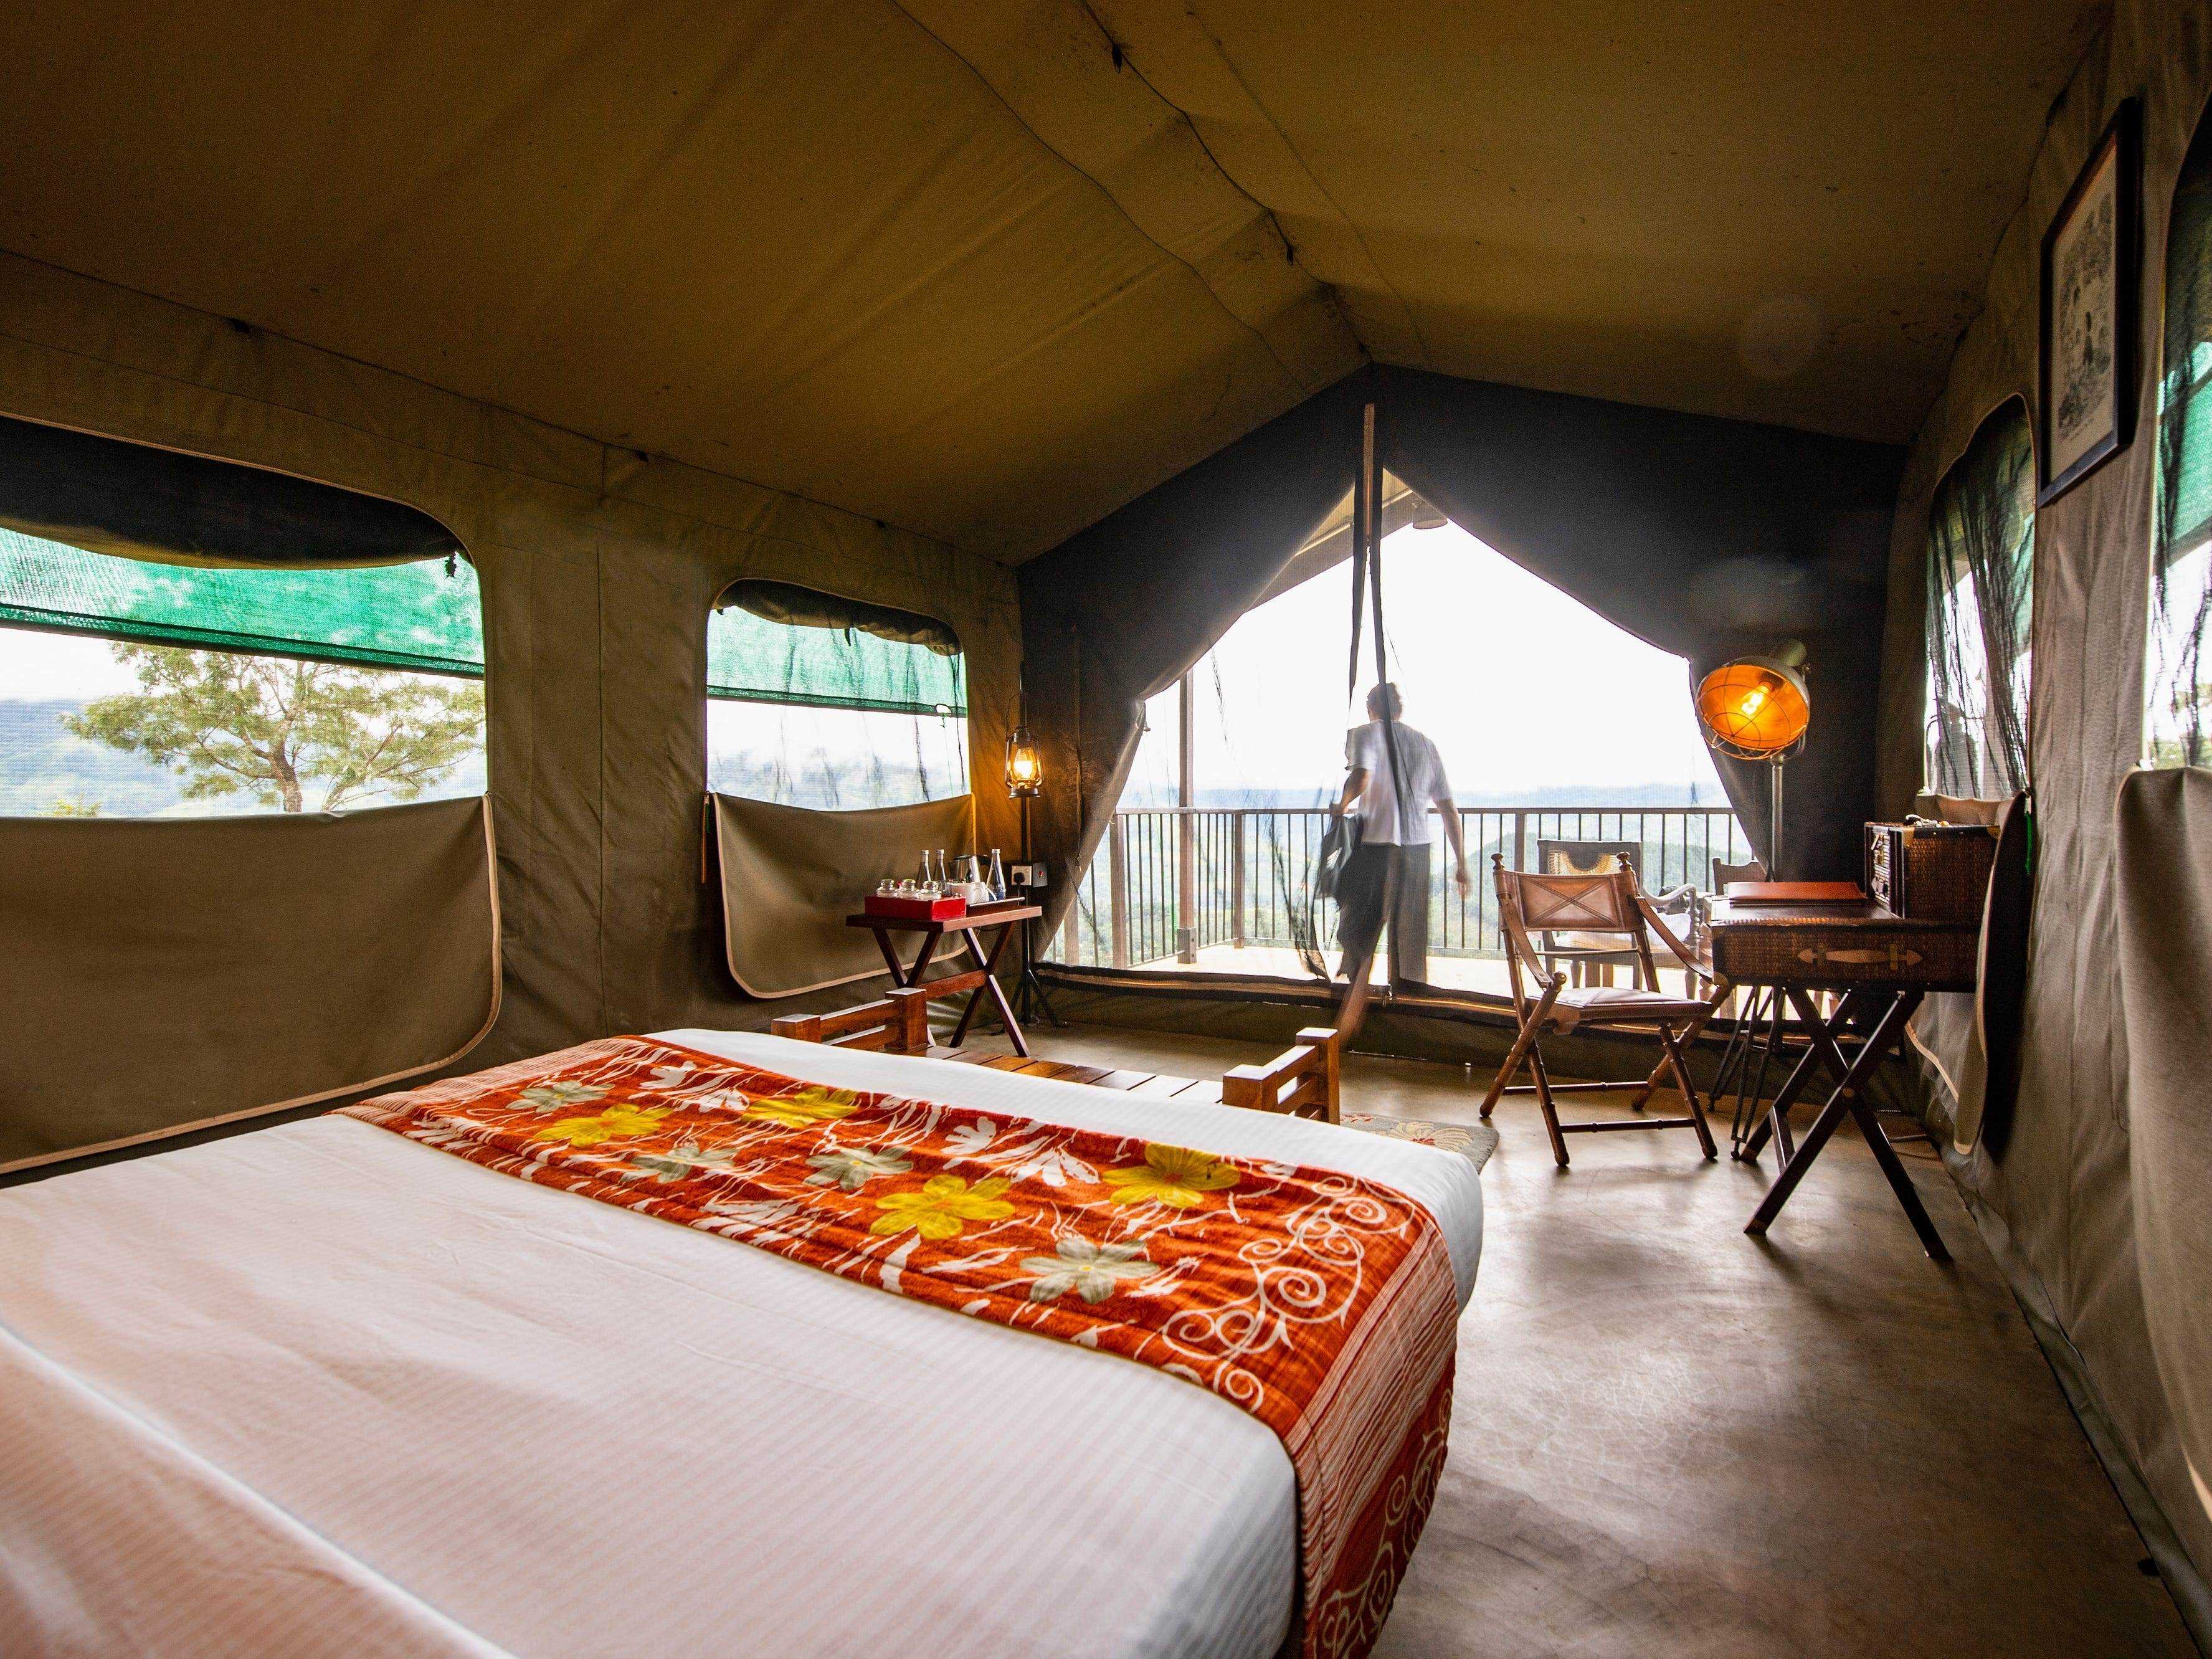 Schlafzimmer in einem Luxuscamp im Hochland von Sri Lanka - Stock-Fotografie